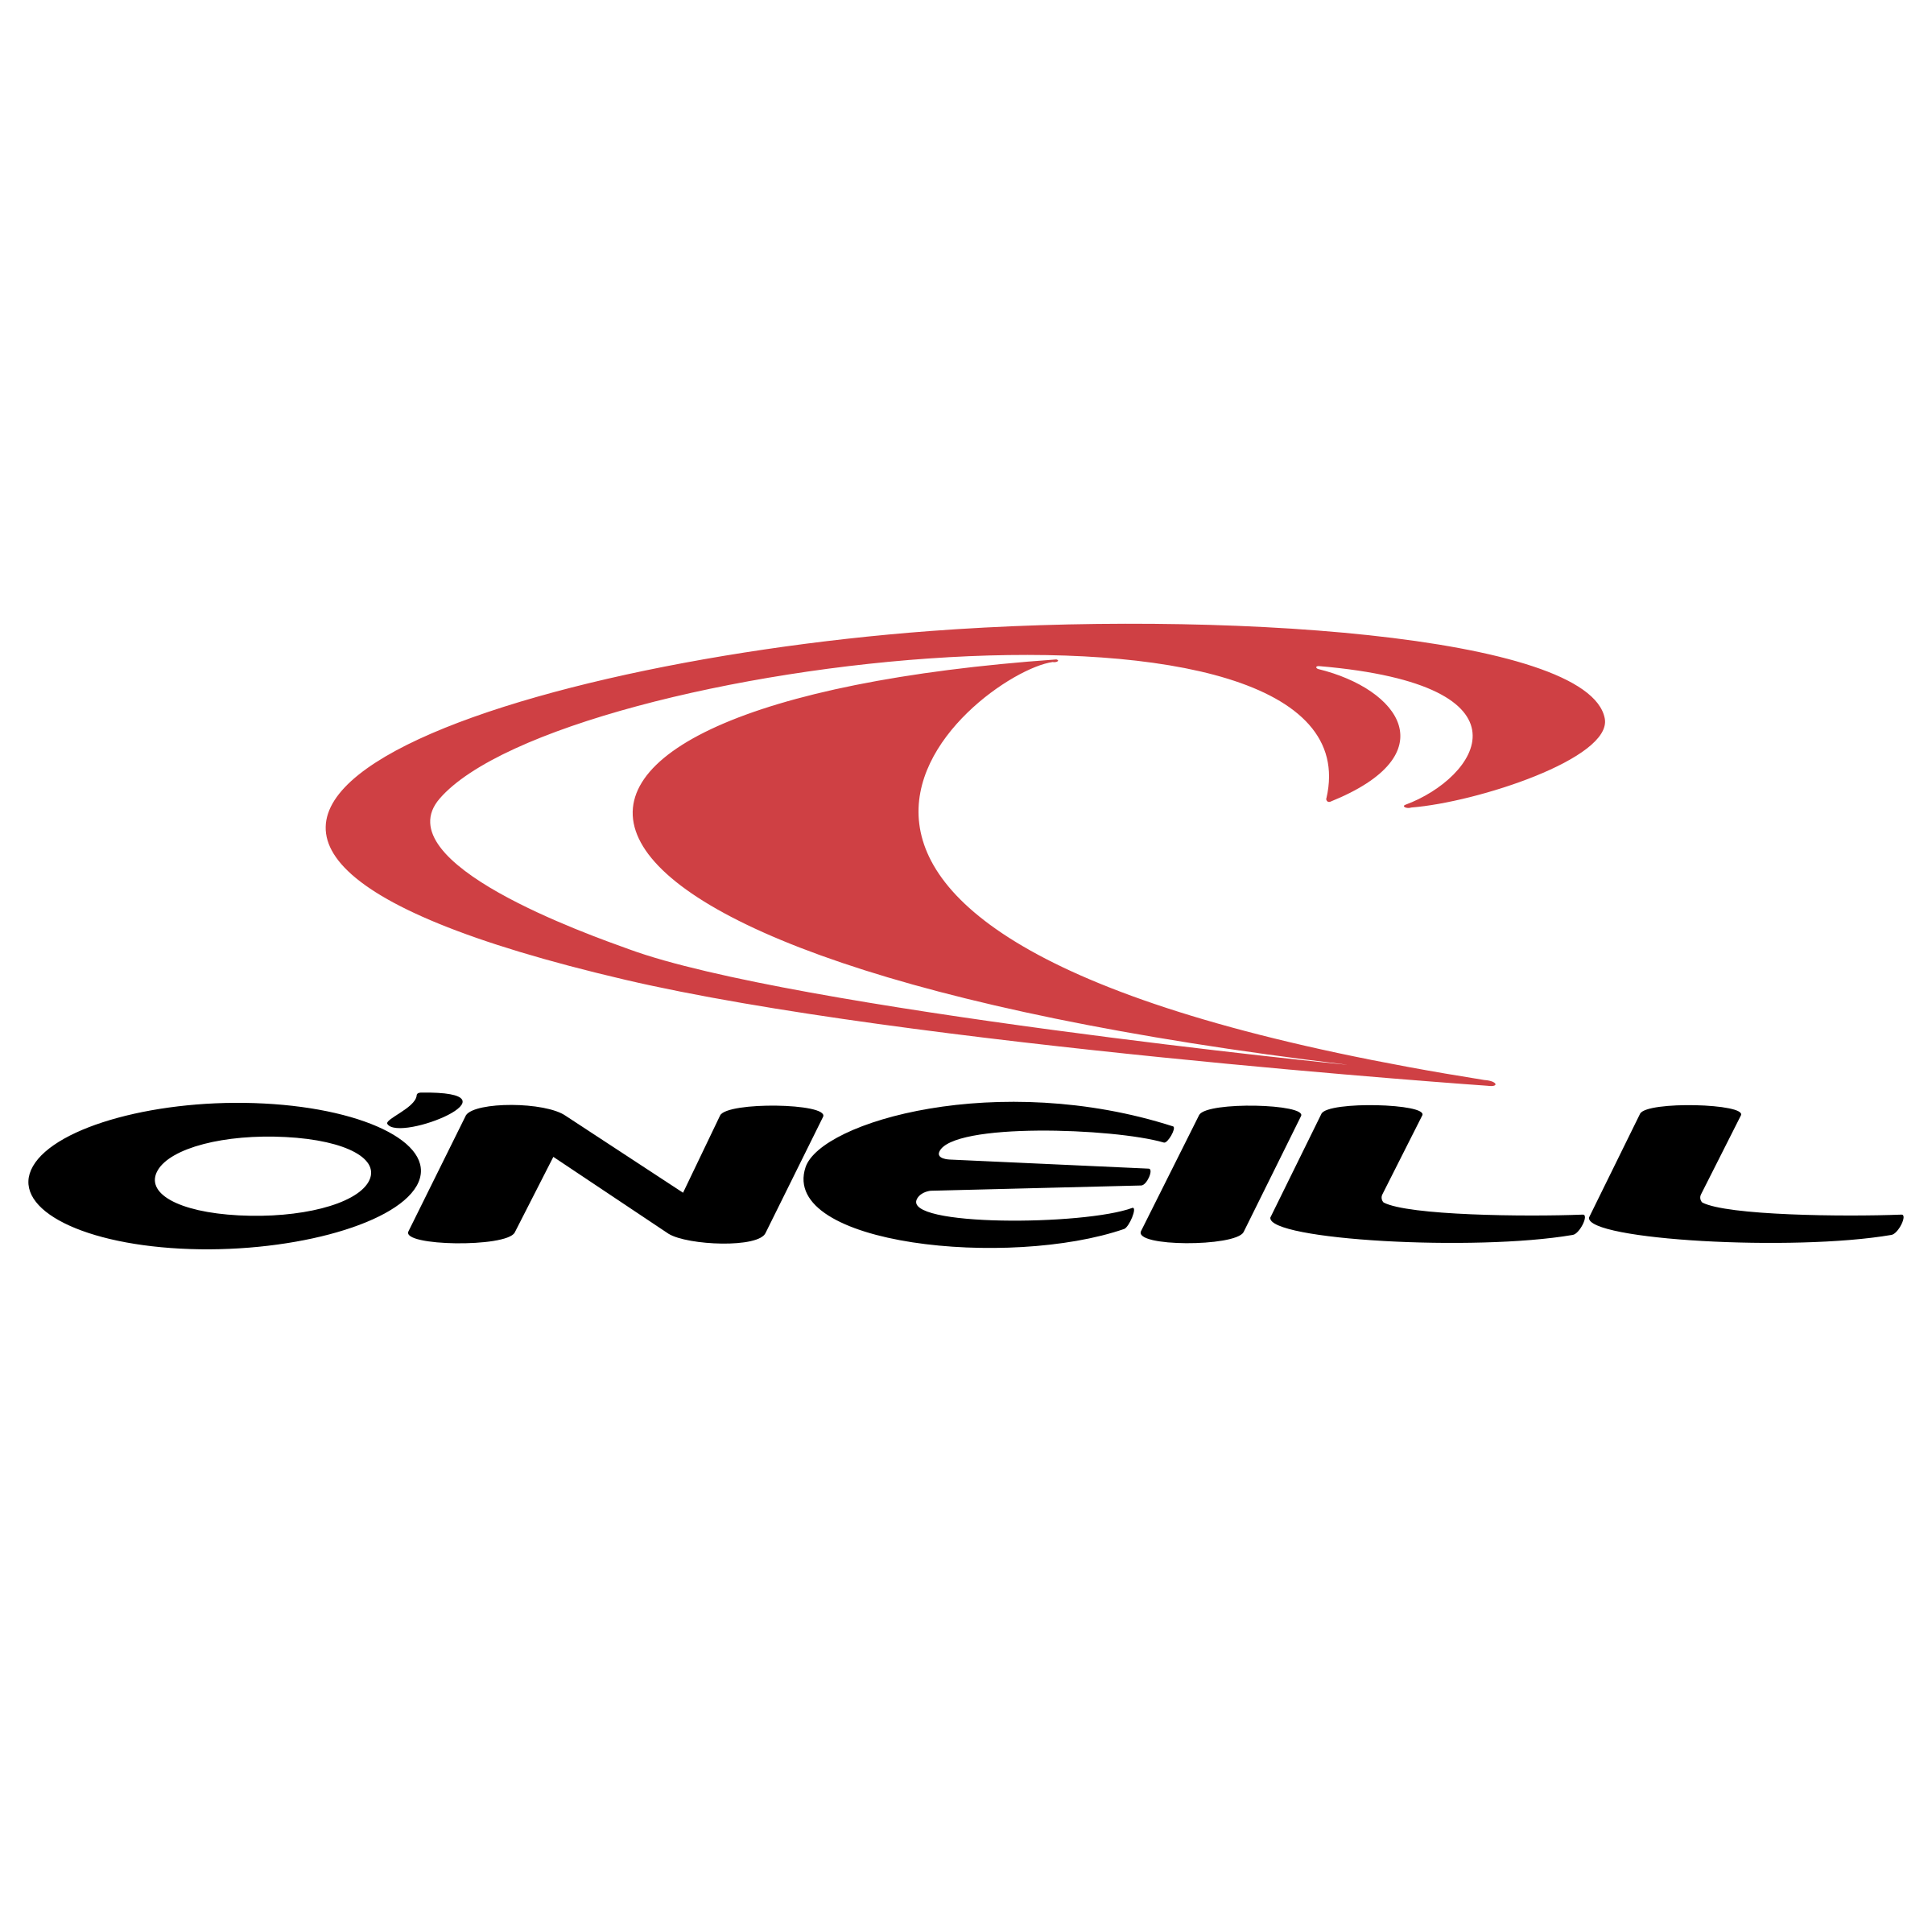 O'Neill Logo - O'Neill Logo PNG Transparent & SVG Vector